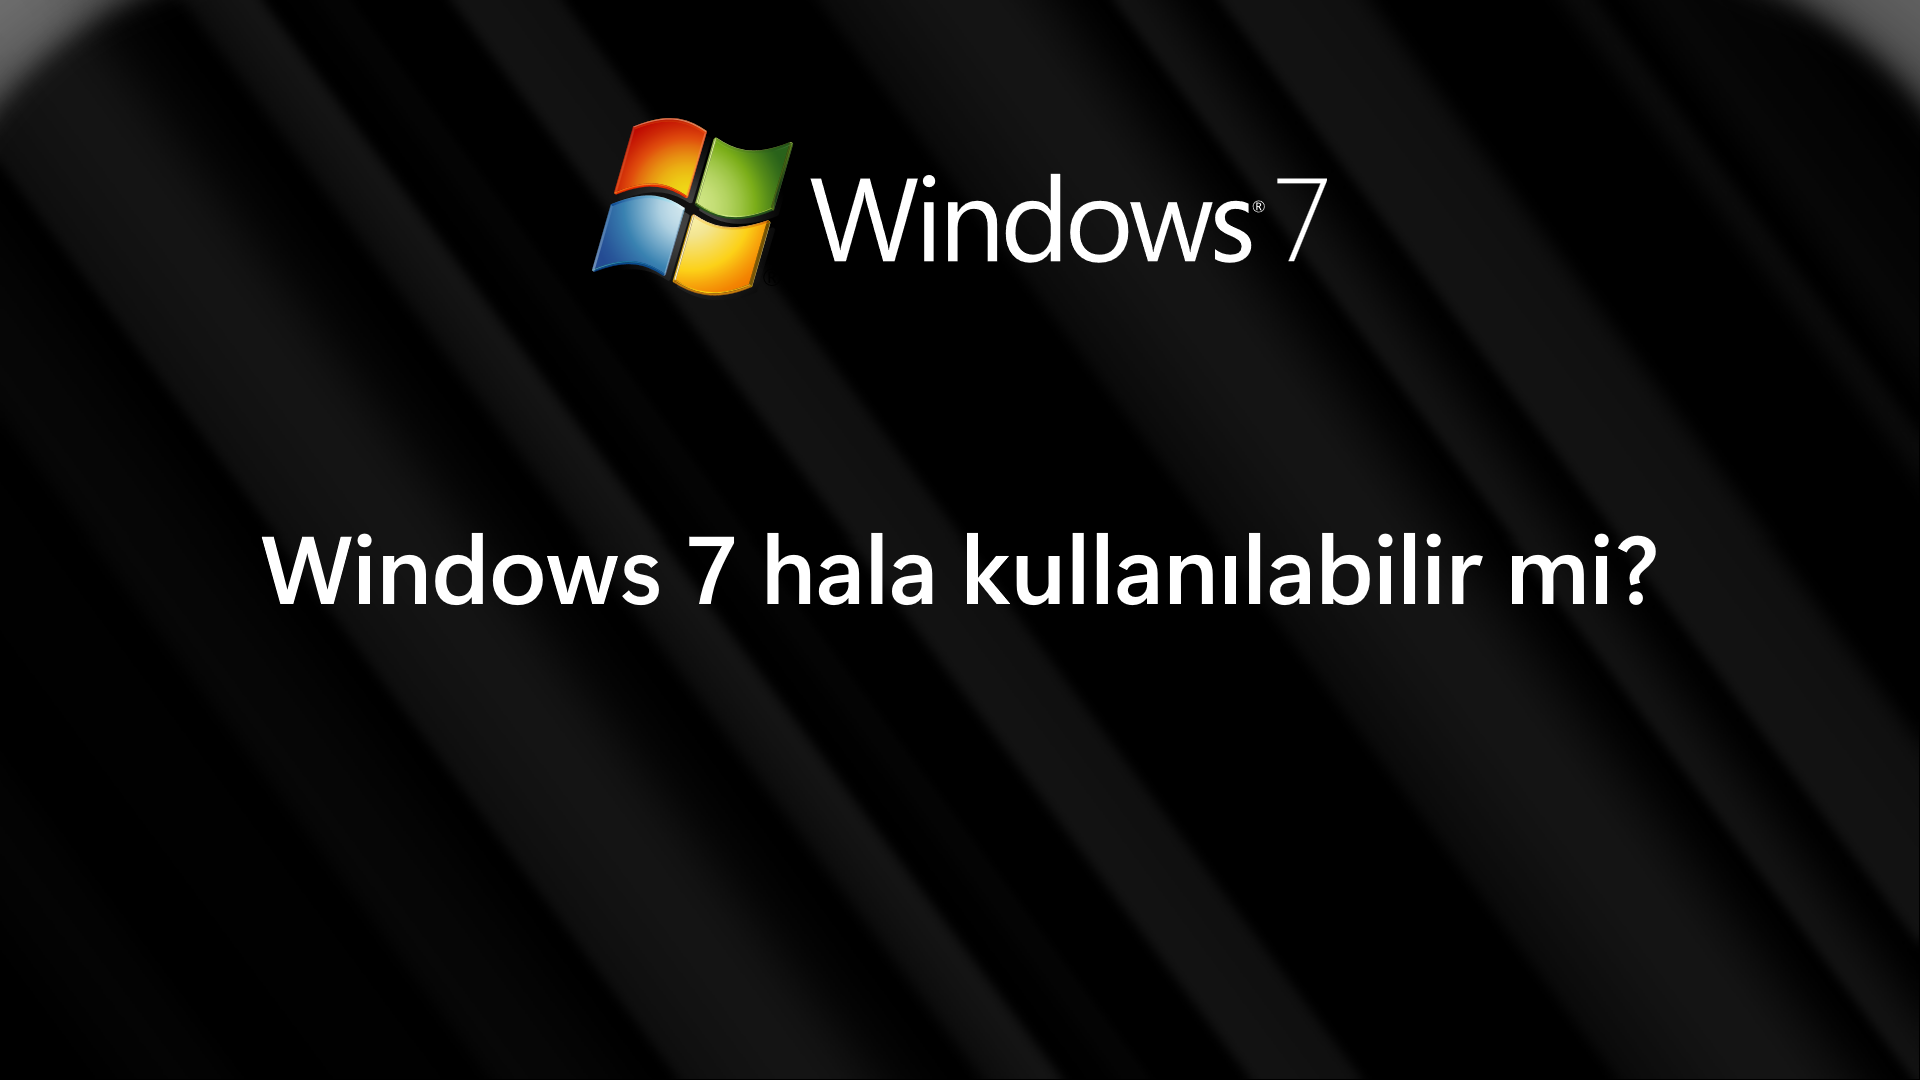 windows 7 hala kullanılabilir mi cover image.png